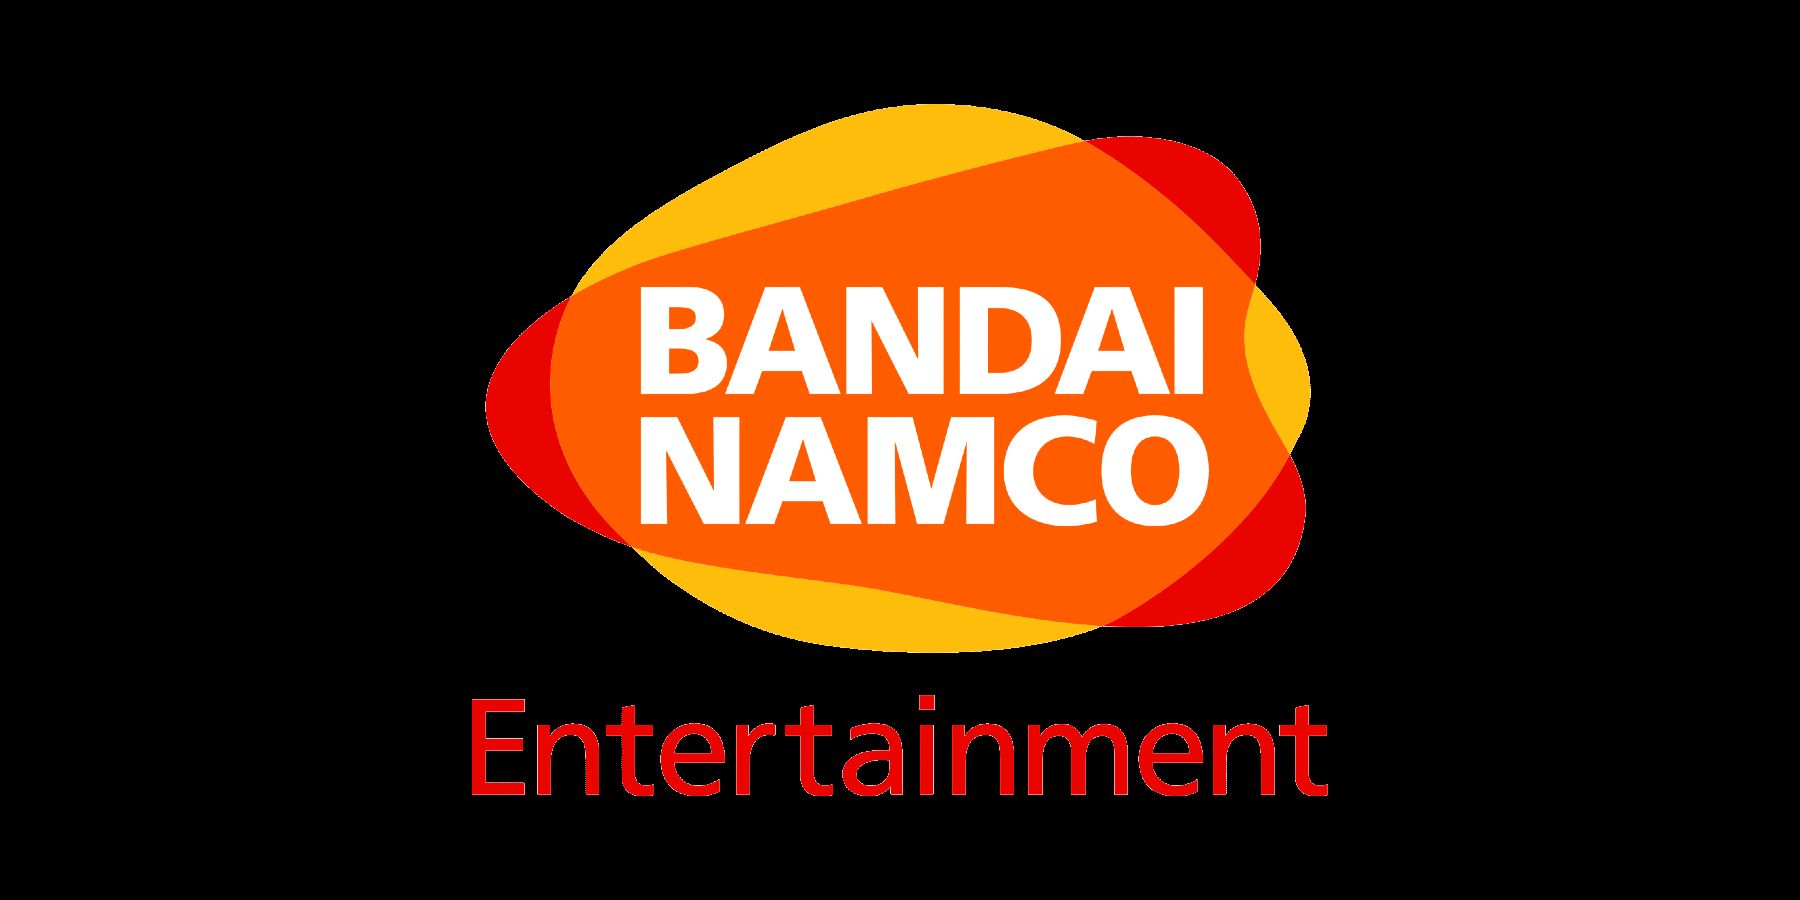 Bandai Namco ha un nuovo logo